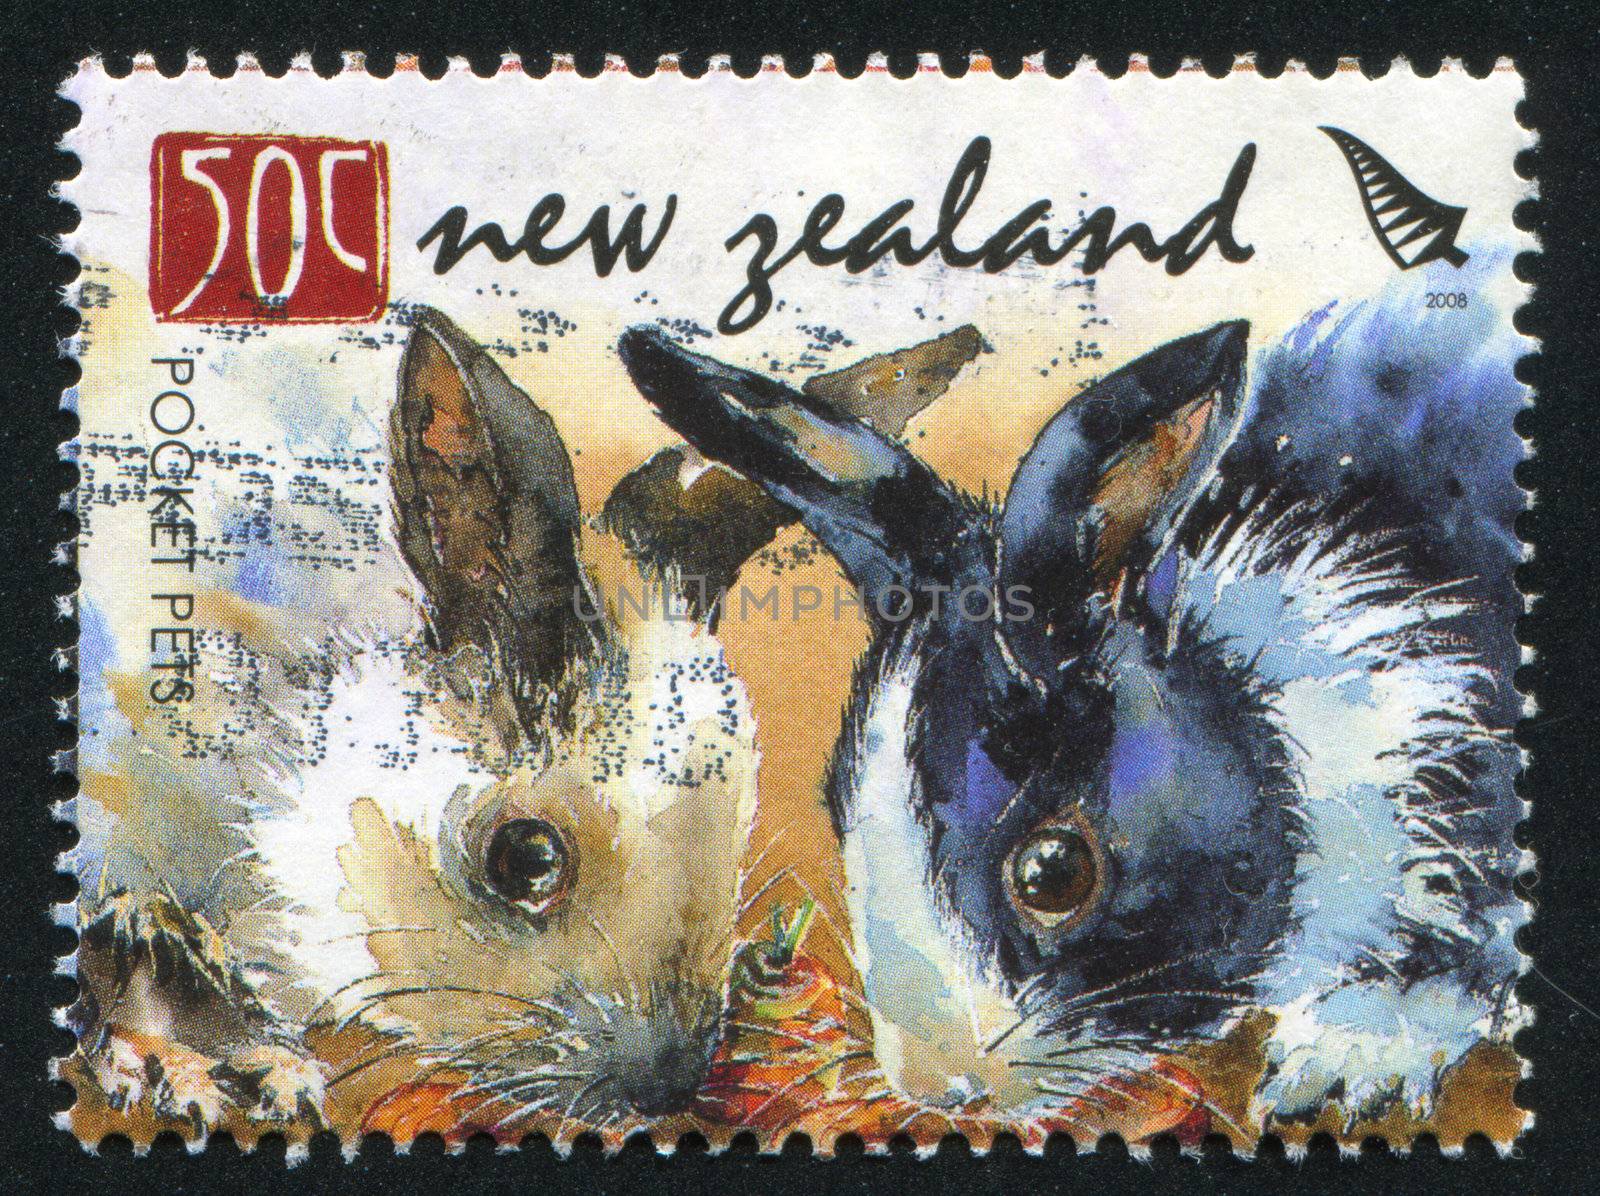 NEW ZEALAND - CIRCA 2008: stamp printed by New Zealand, shows Pocket Pets, Rabbits, circa 2008